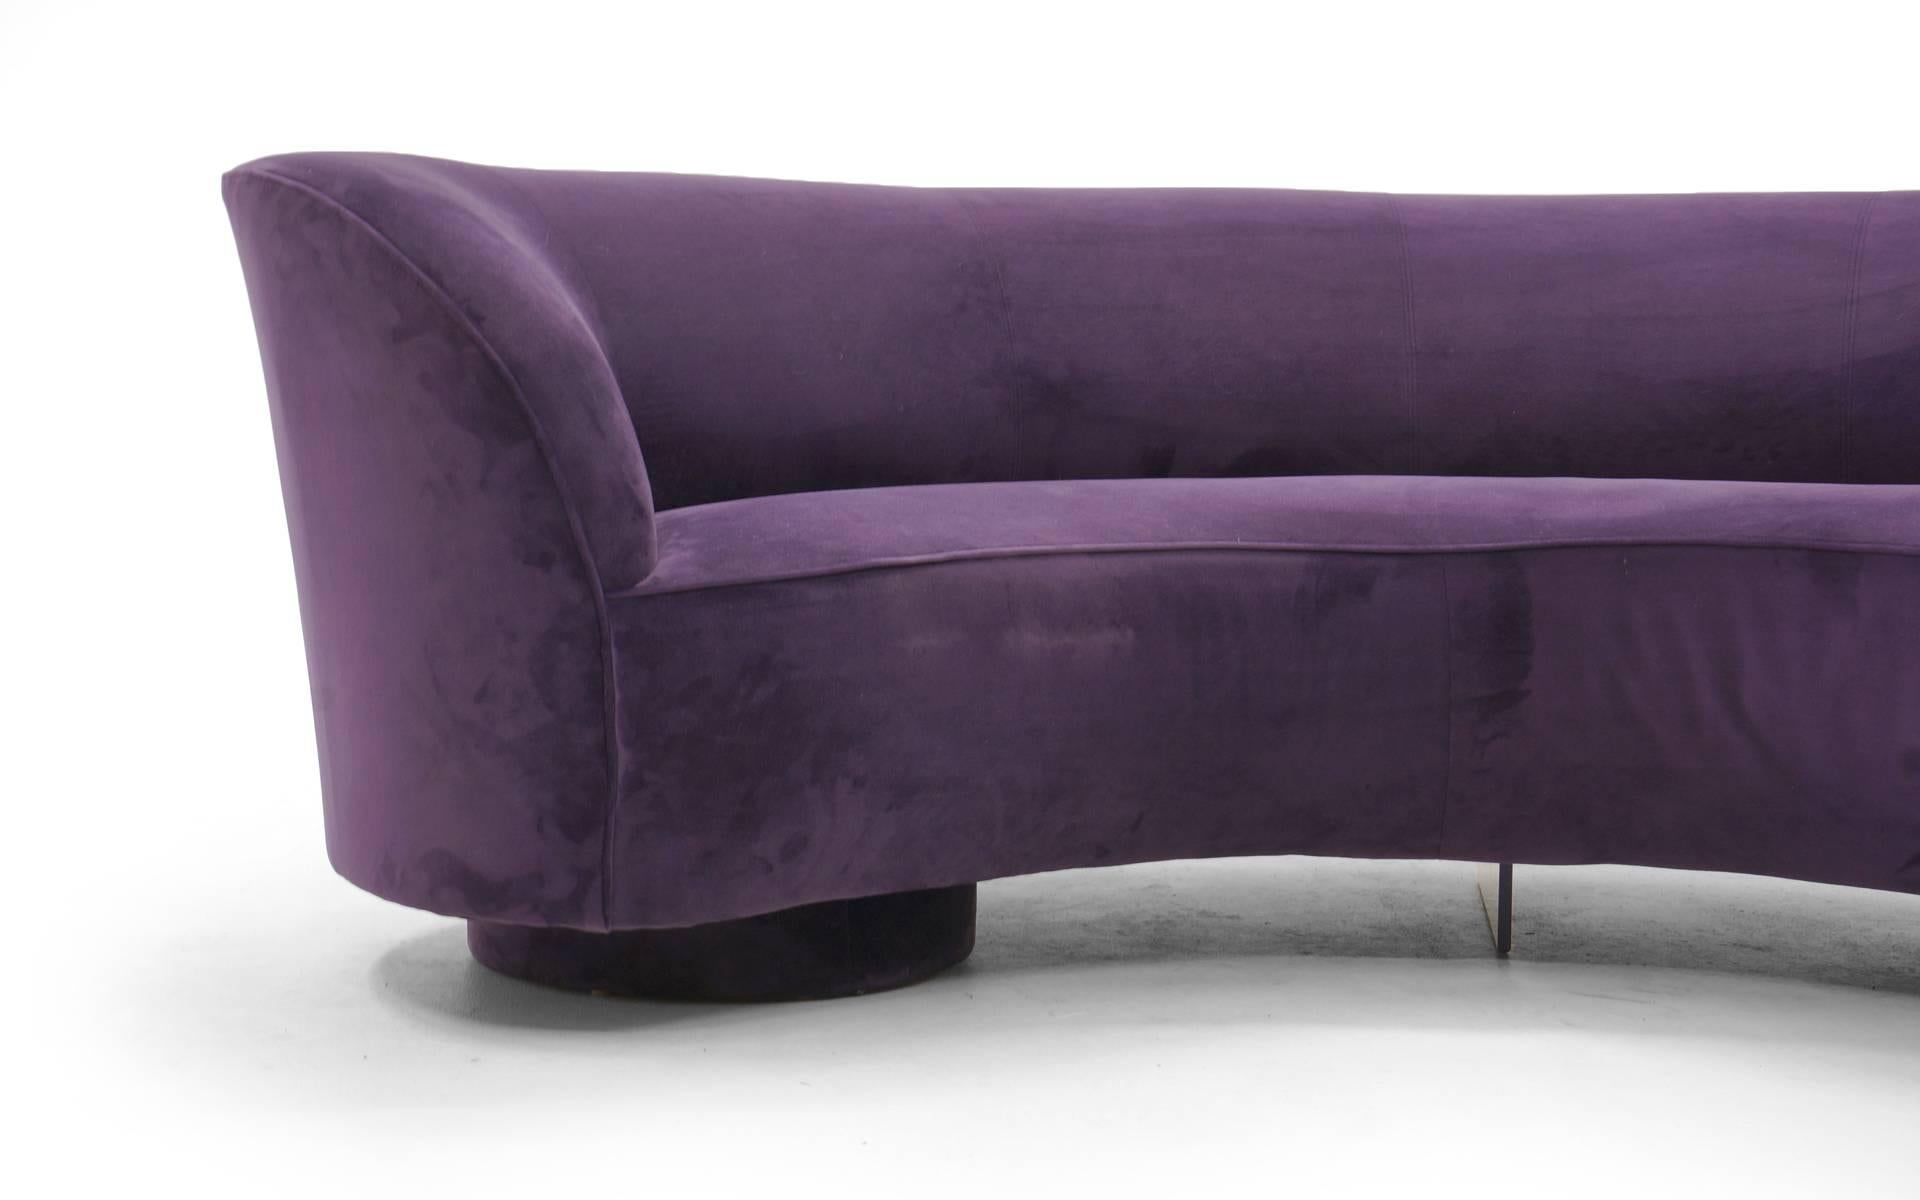 Hollywood Regency Vladimir Kagan Cloud Sofas, Pair of Newly Upholstered in Purple/Plum Ultrasuede